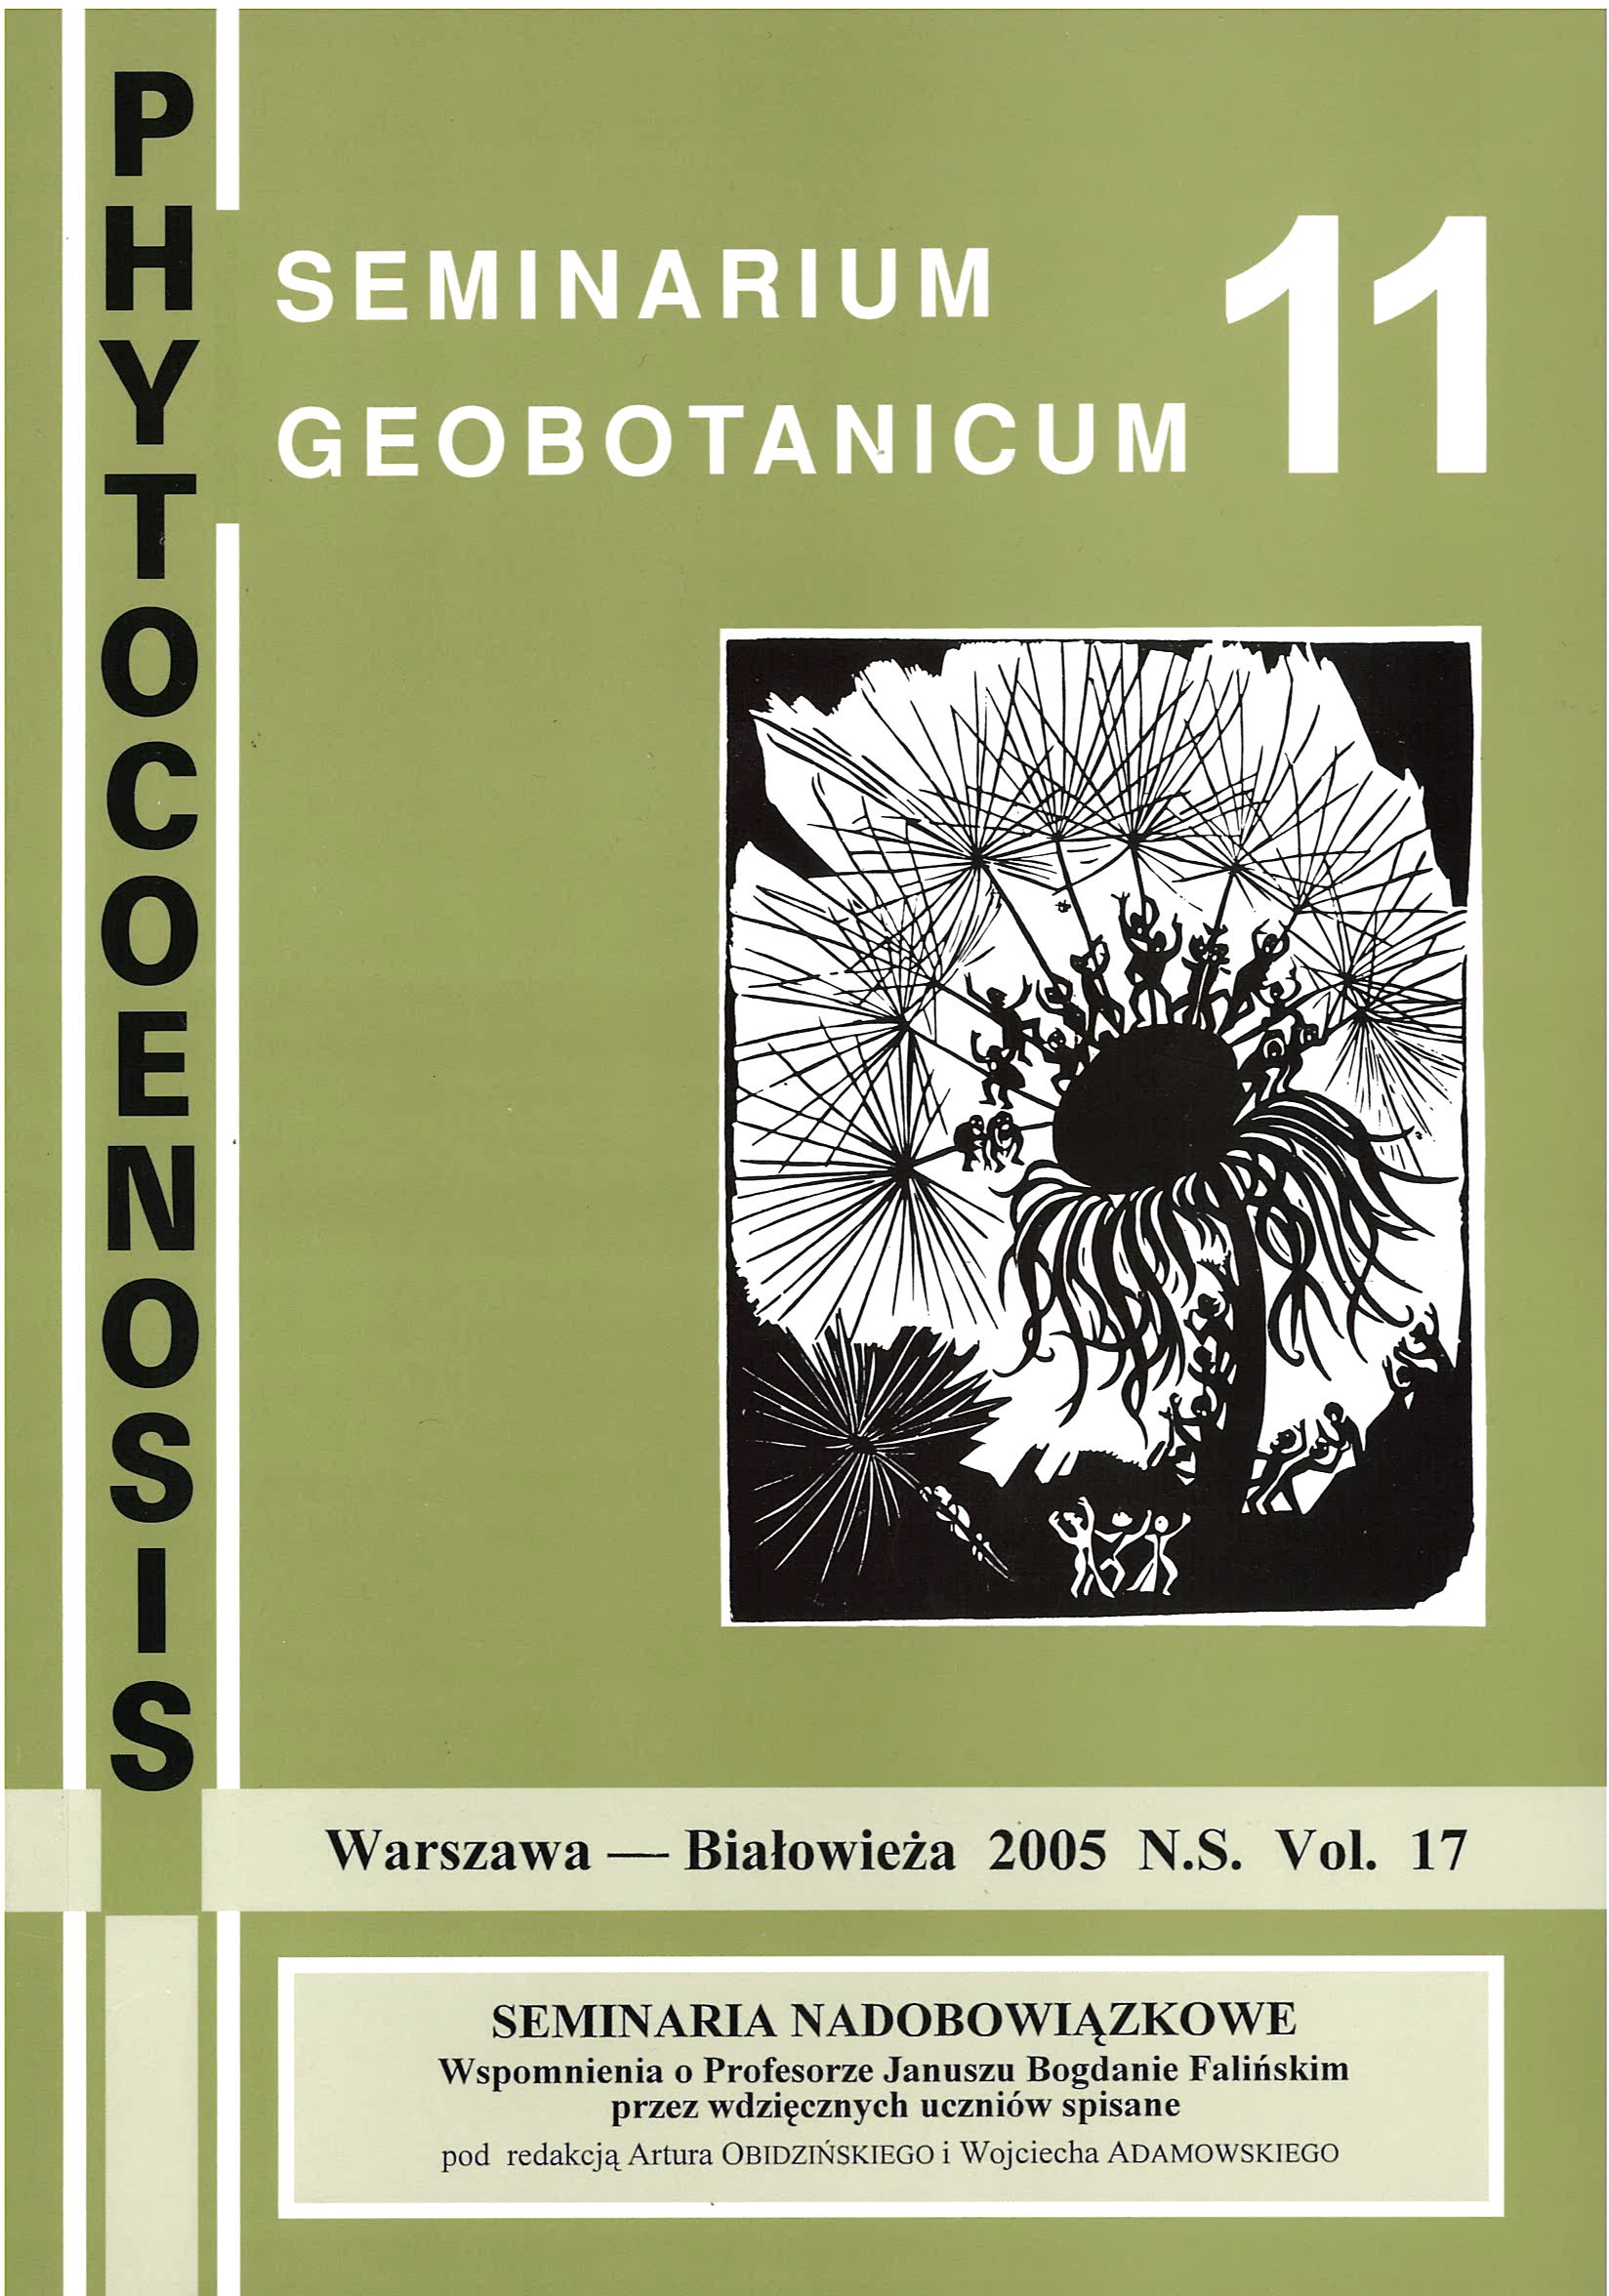 Phytocoenosis (N.S.) 17, Seminarium Geobotanicum 11